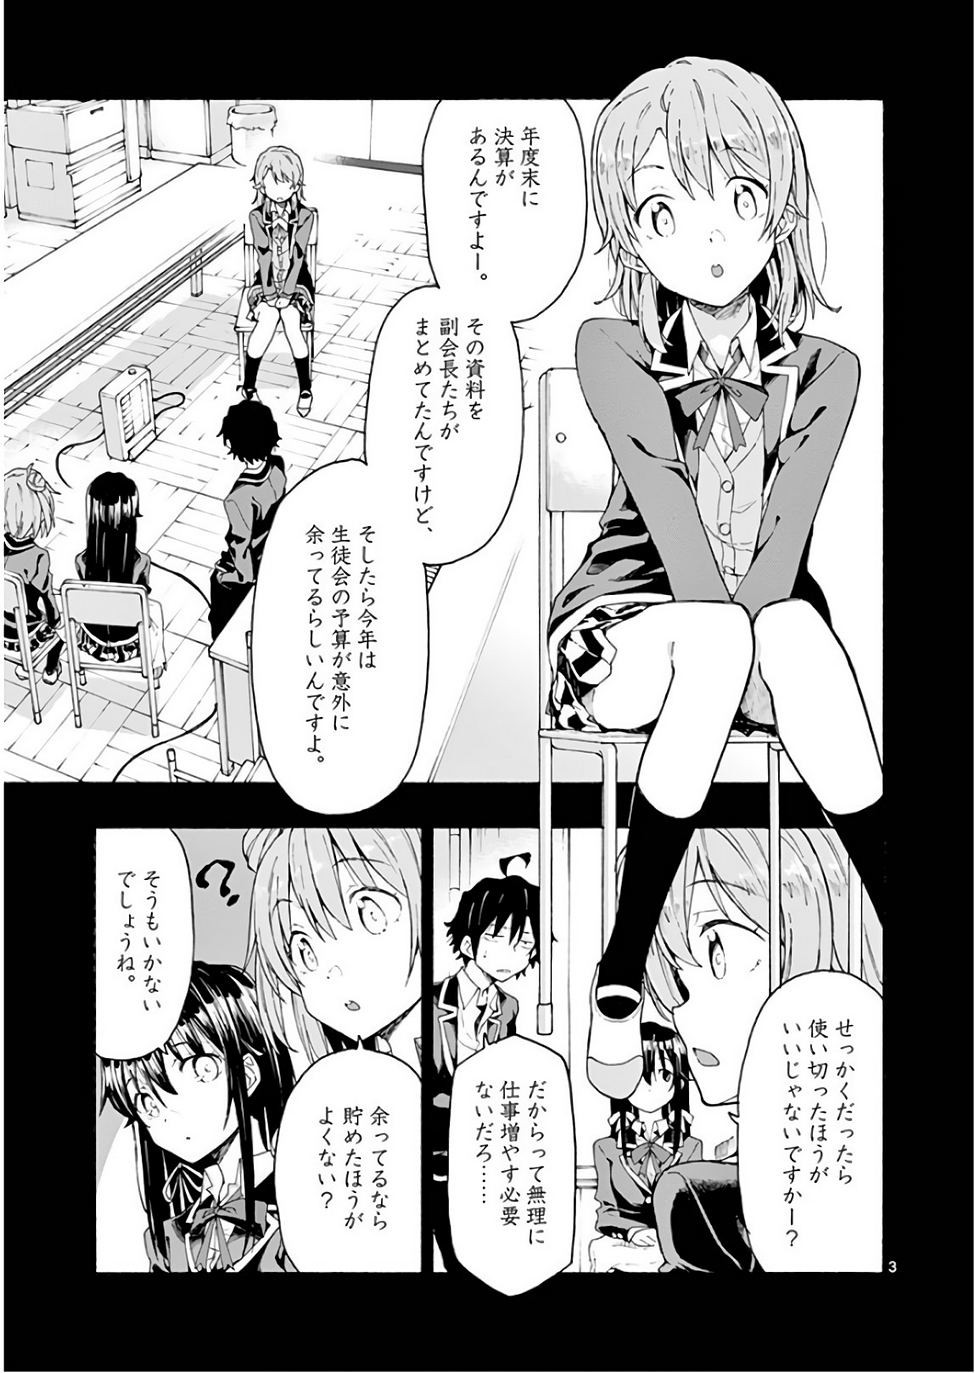 Yahari Ore no Seishun Rabukome wa Machigatte Iru. @ Comic - Chapter 72 - Page 3